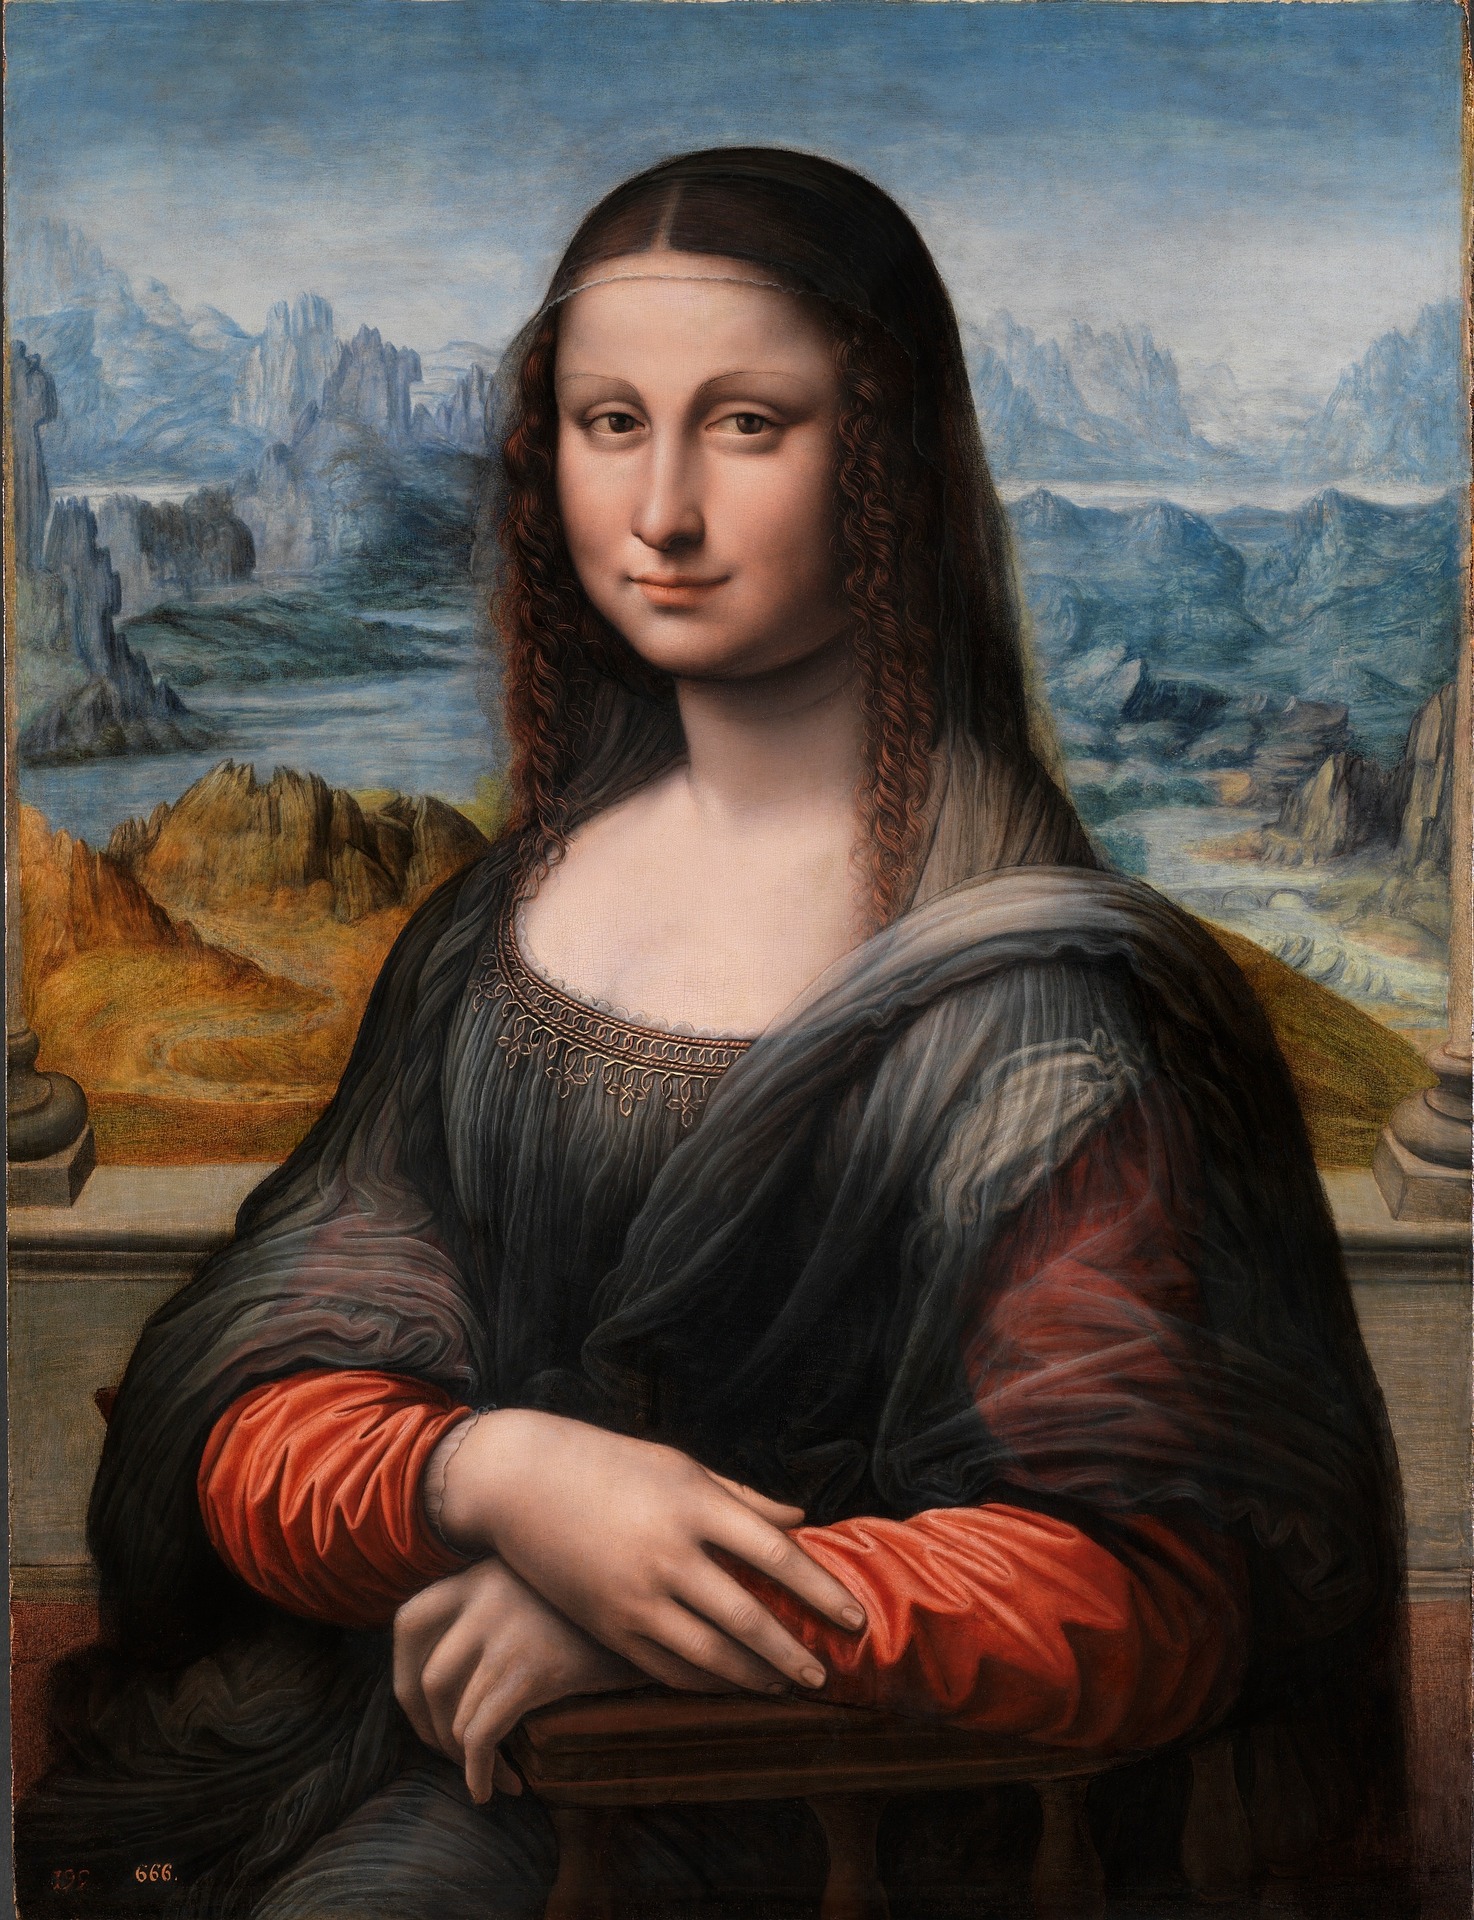 Portrait de Mona Lisa, La Joconde